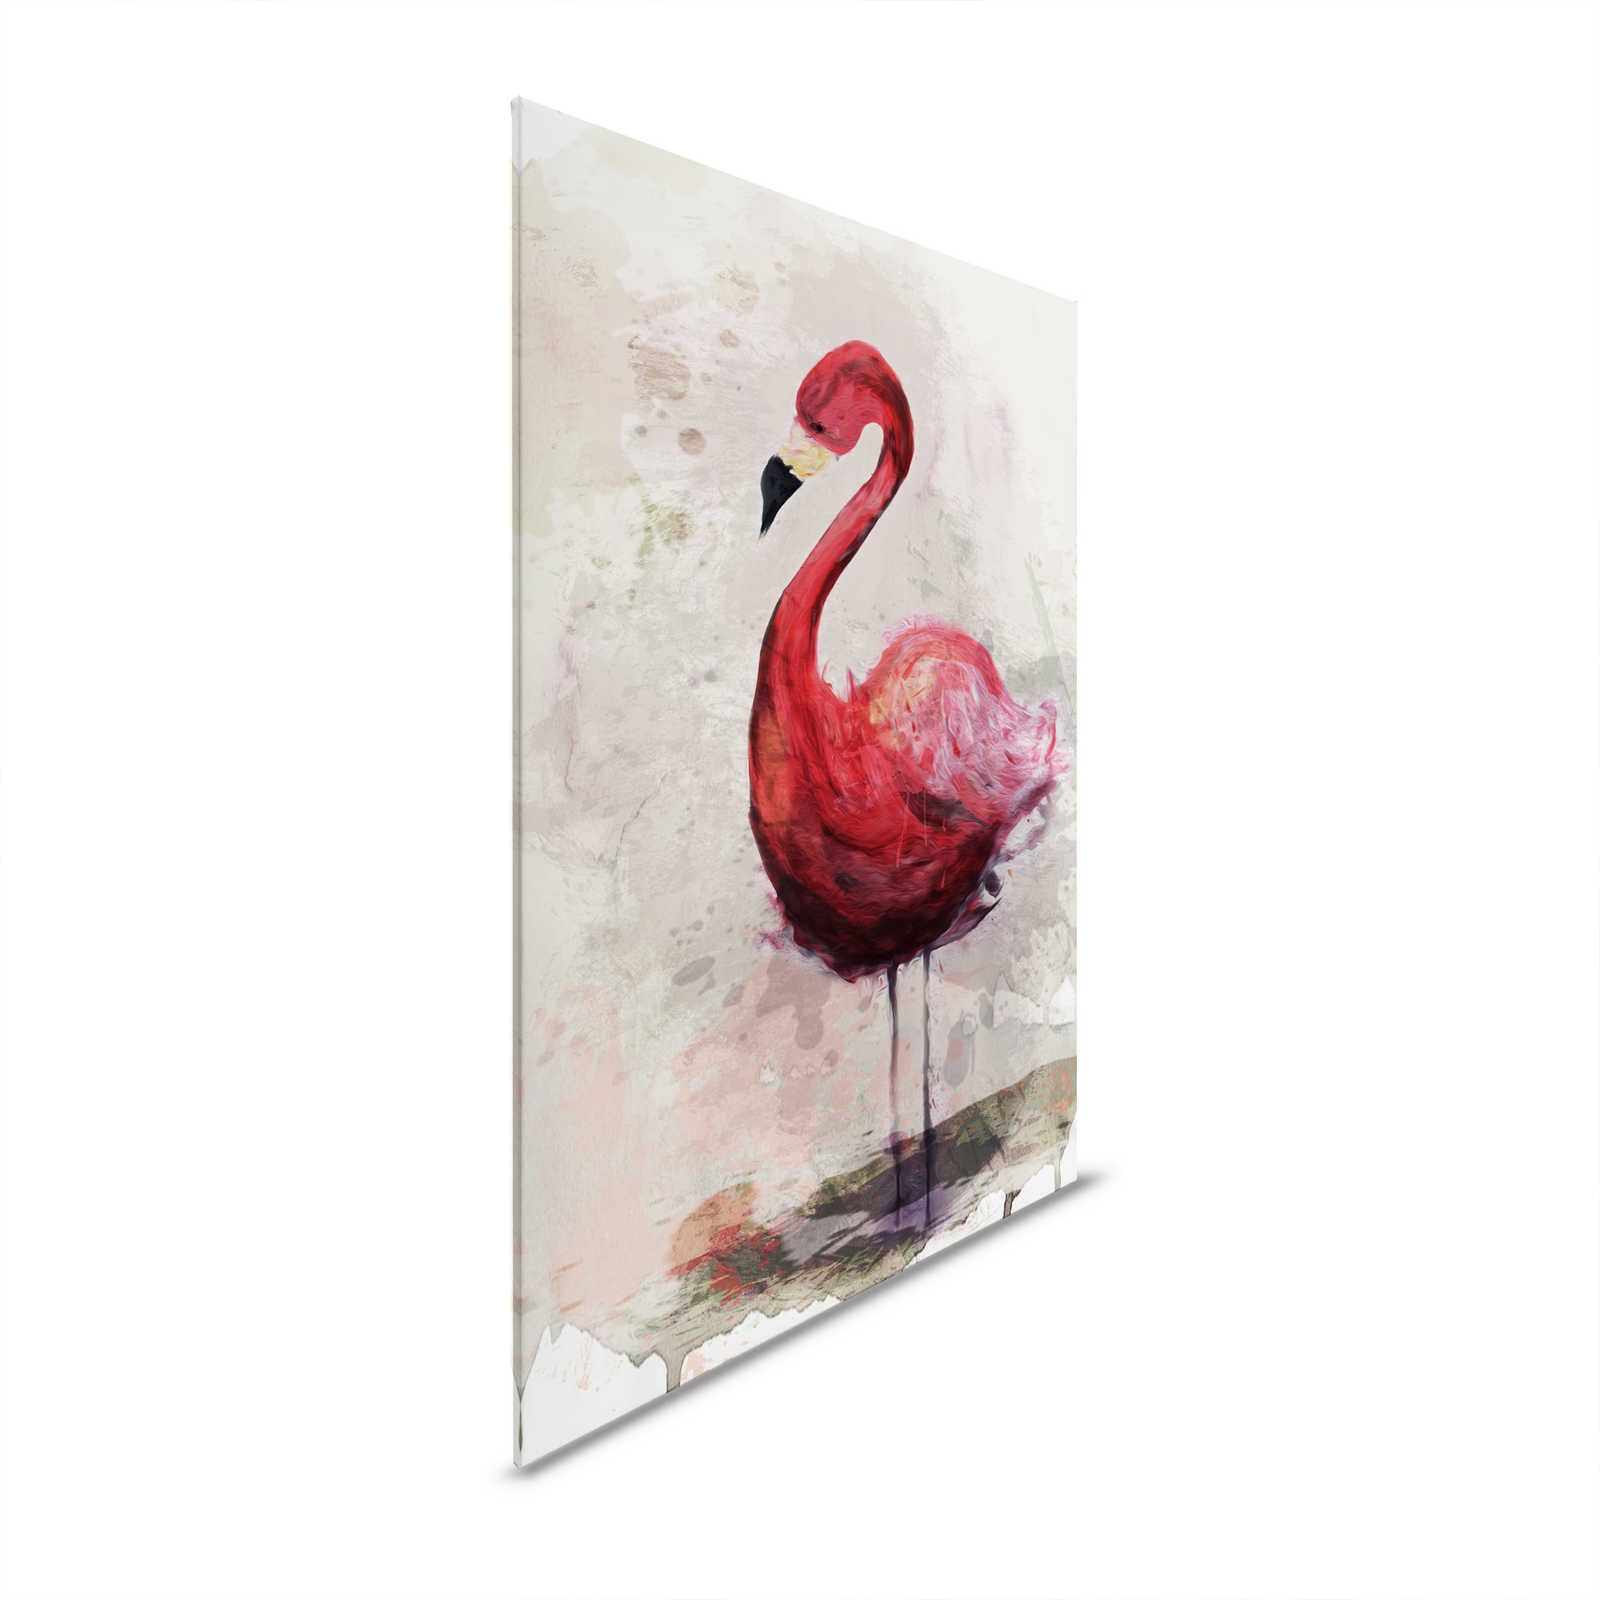 Aquarel Canvas Schilderij met Flamingo Motief in Tekenstijl - 1.20 m x 0.80 m
